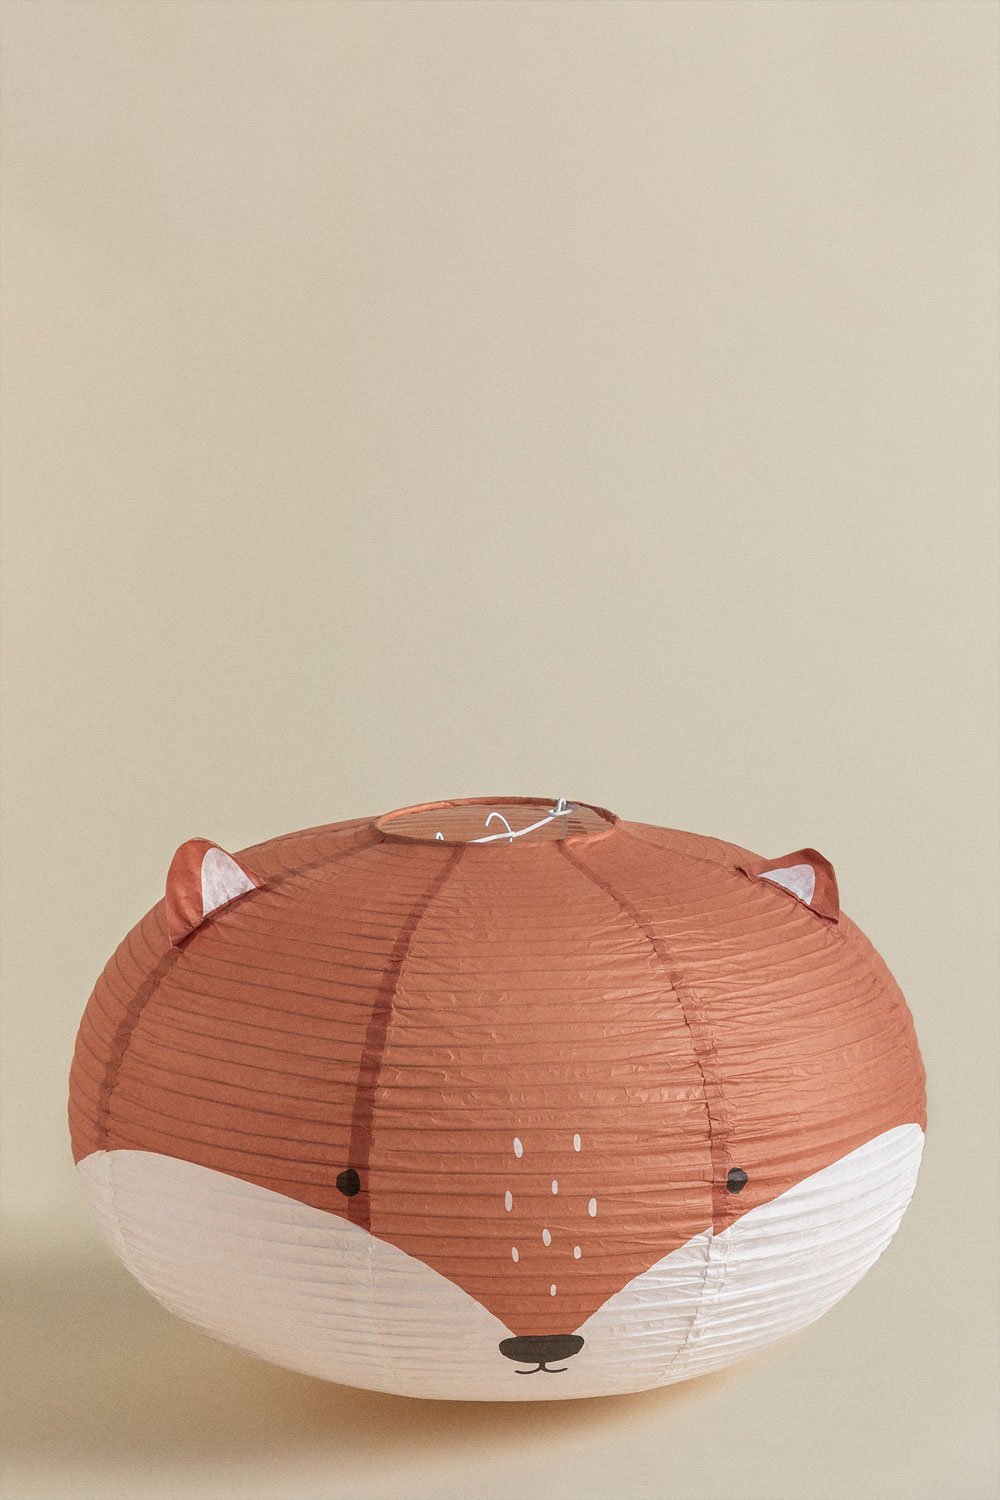 Mignod Kinder-Lampenschirm aus Reispapier , Galeriebild 1